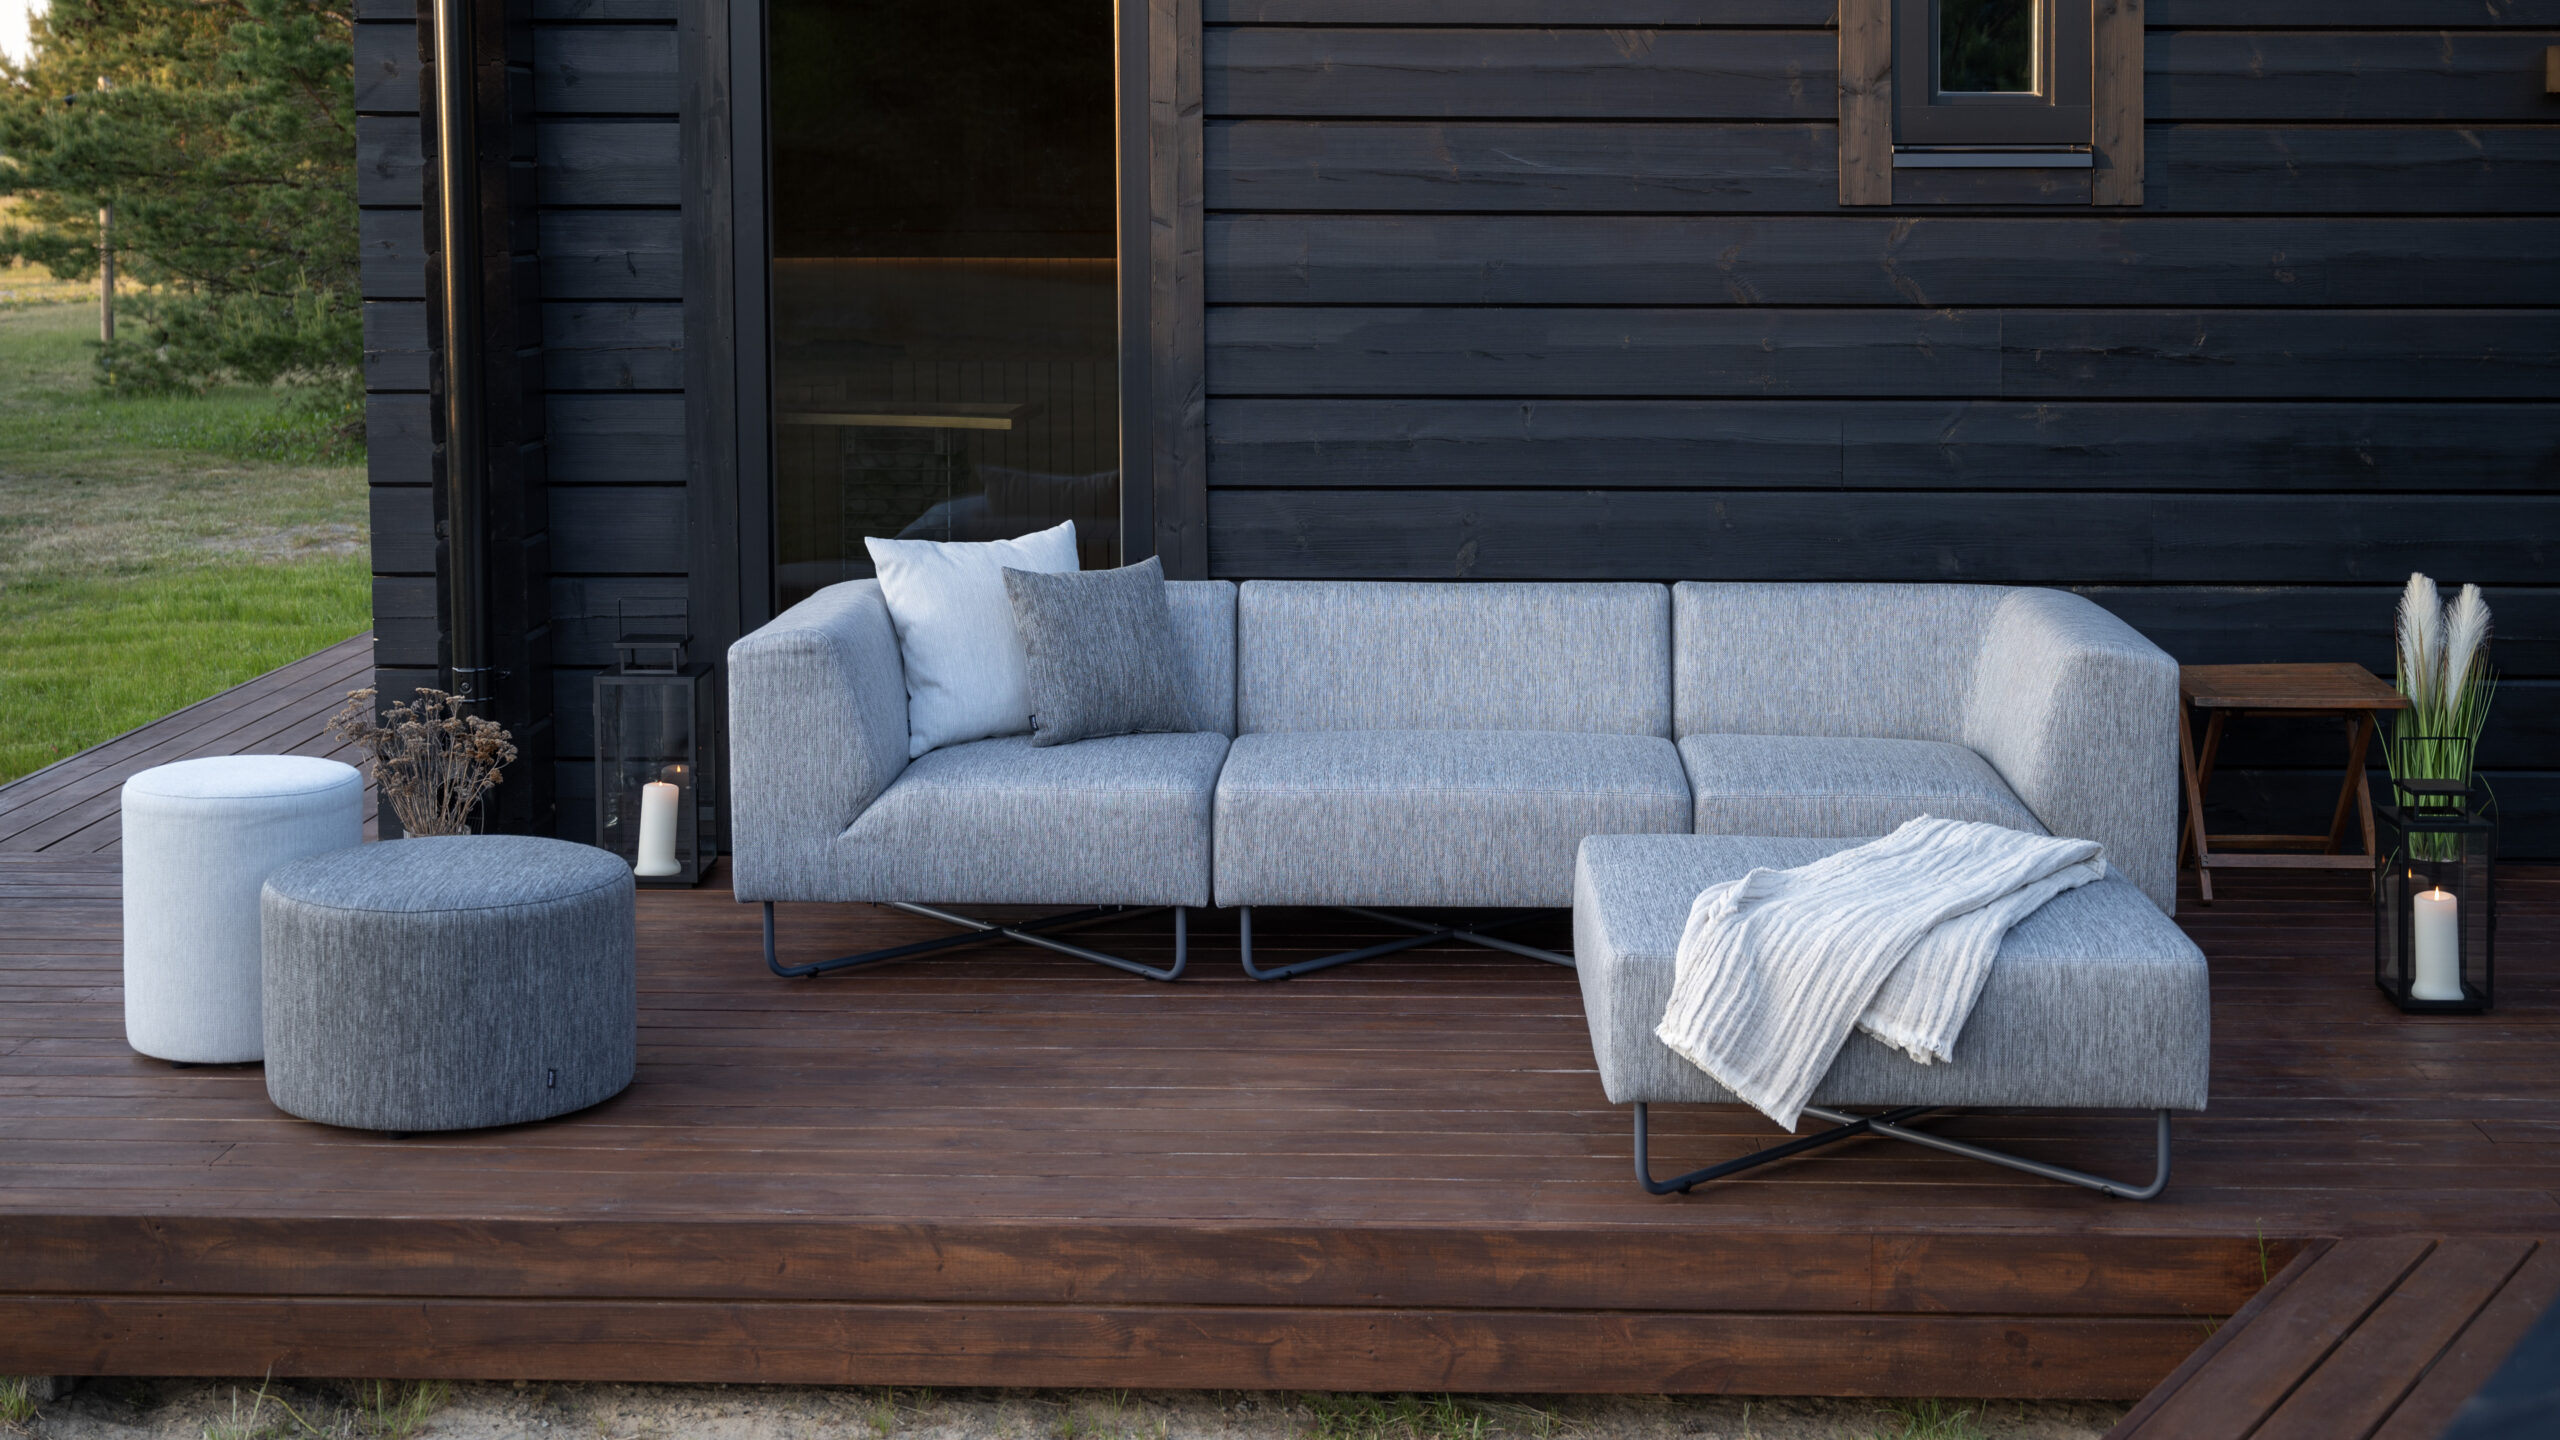 Oot-Oot Studio oferă sfaturi: Cum să alegi un mobilier practic și durabil din oțel?